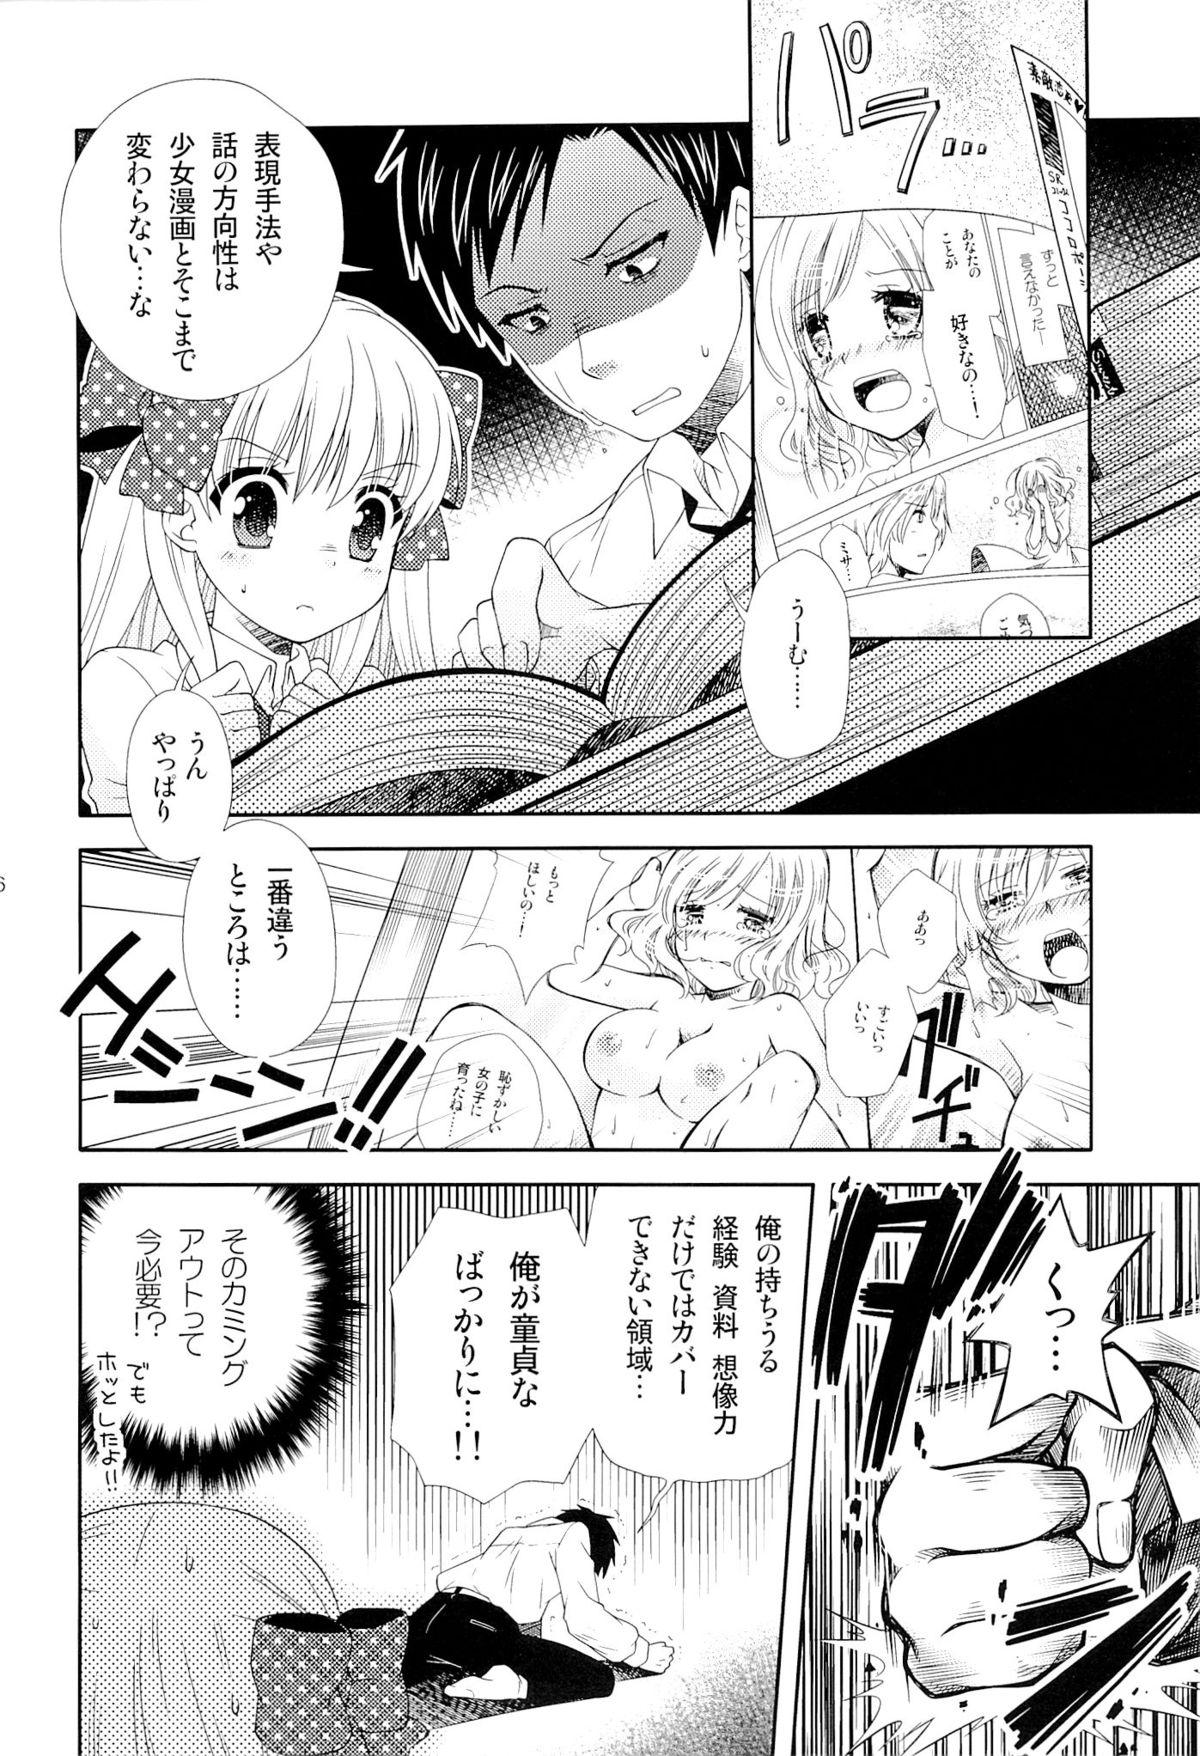 Gayclips Nozaki-kun, Watashi ni Tetsudaeru koto, Aru? - Gekkan shoujo nozaki-kun Friends - Page 5